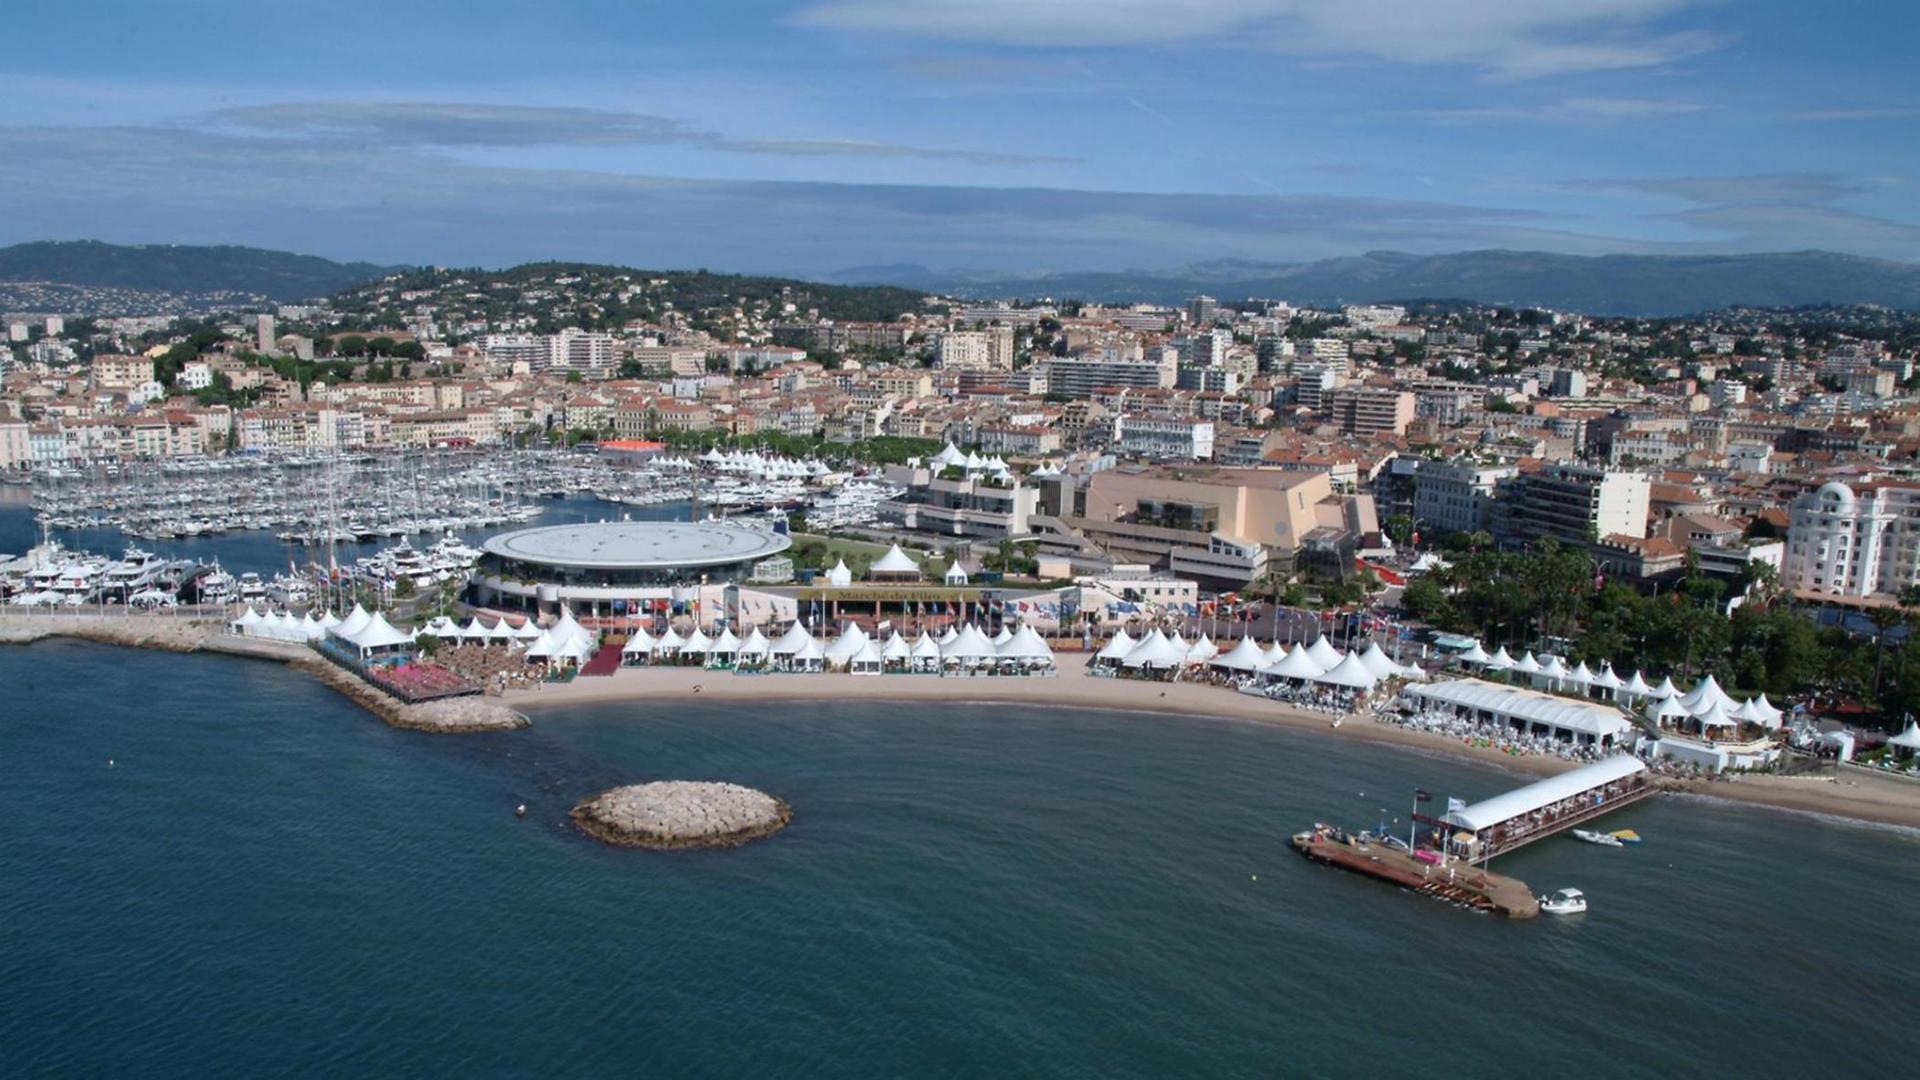 Panoramablick über das Küstenstädtchens Cannes mit vielen weißen Zelten am Strand und einem großen Festivalkino unweit davon.